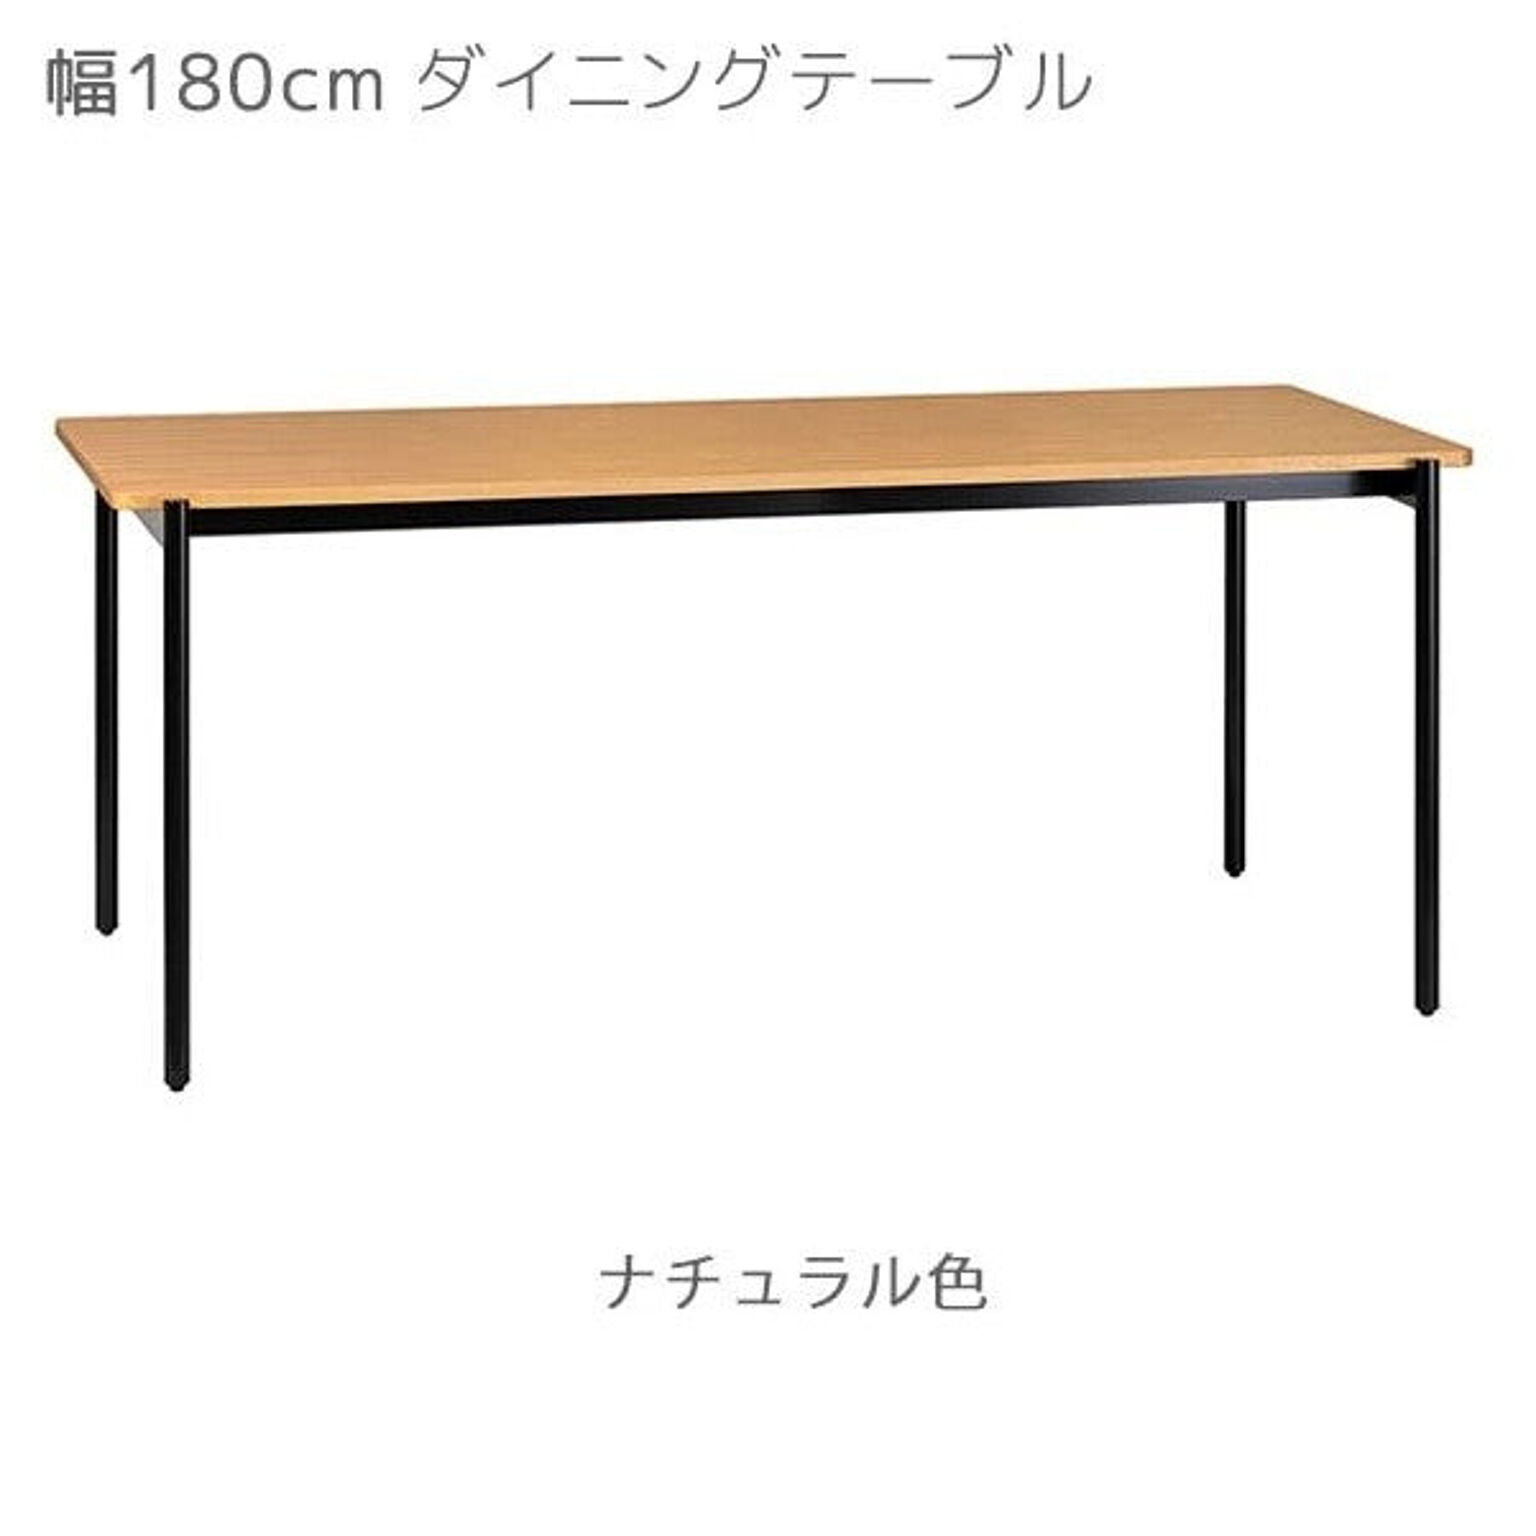 ダイニングテーブル カラー2色 幅180 奥行80 高さ72 ブラック色 ナチュラル色 食卓 テーブル CHARME シャルム CHM-180